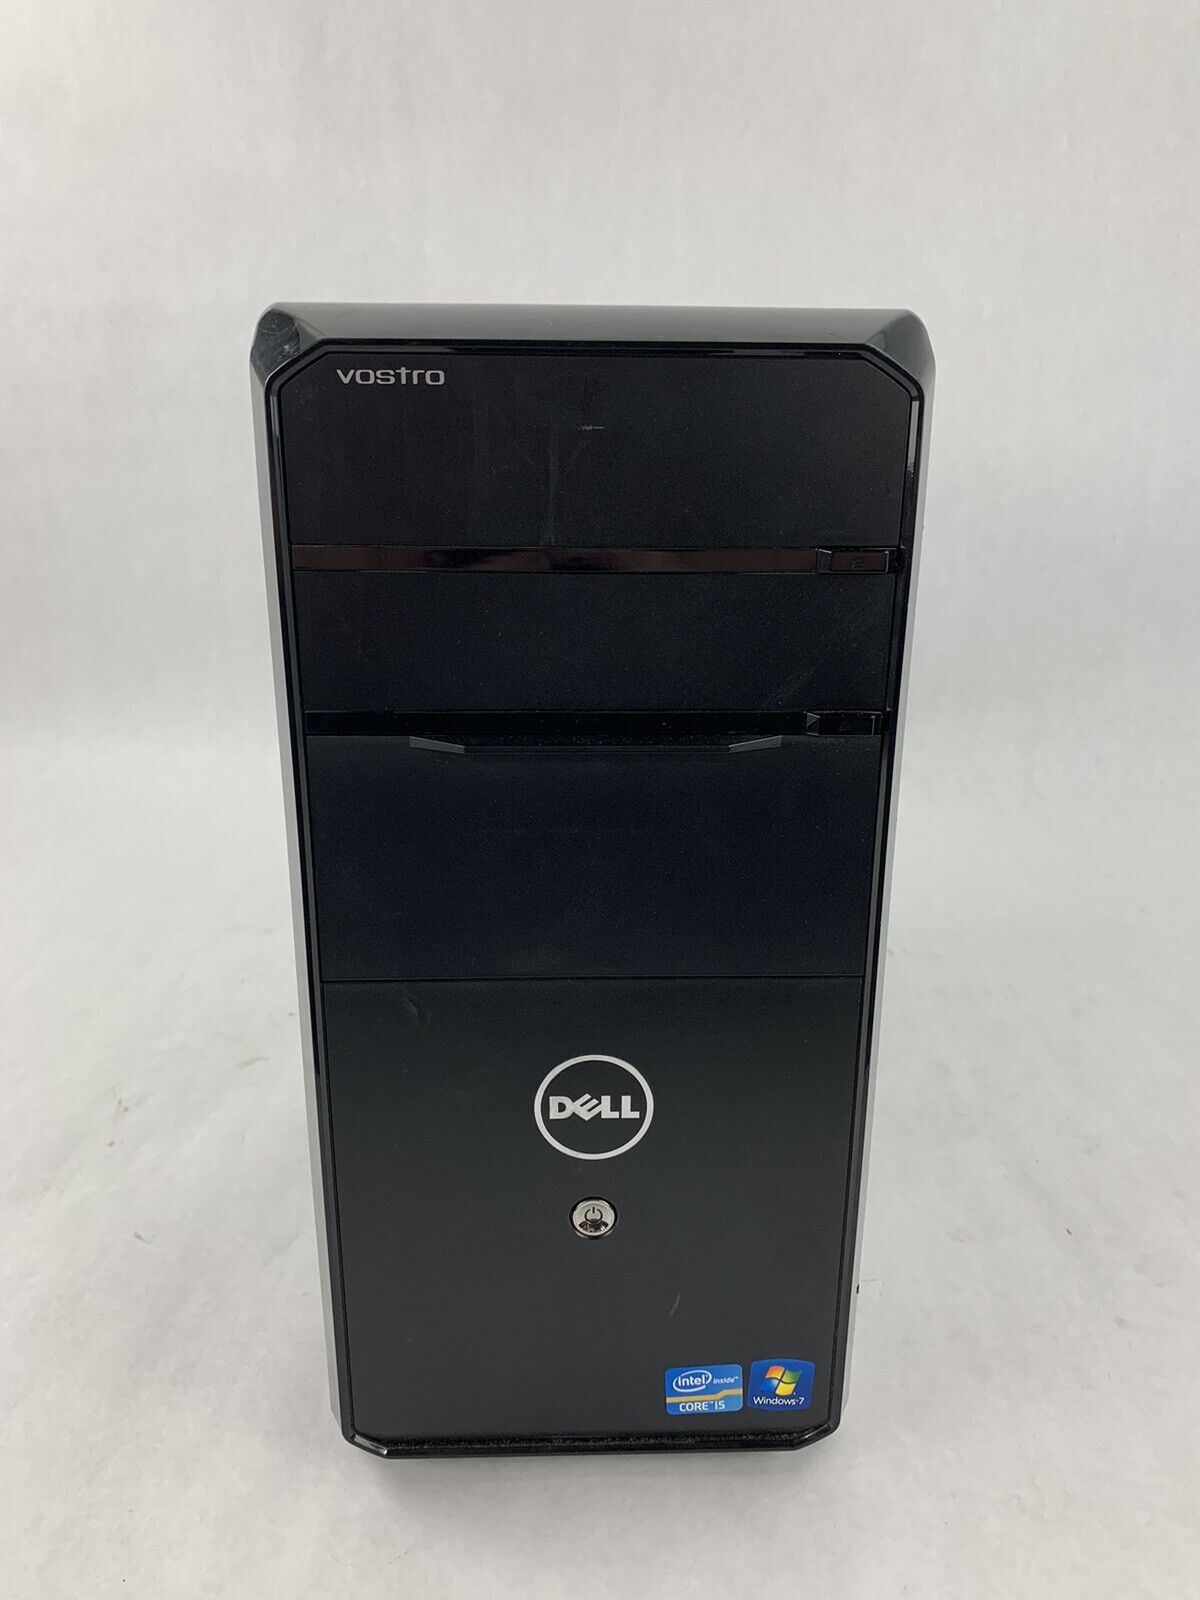 Dell Vostro 460 Intel i5-2400, 3.1 GHz, 4GB Ram NO HDD, OS